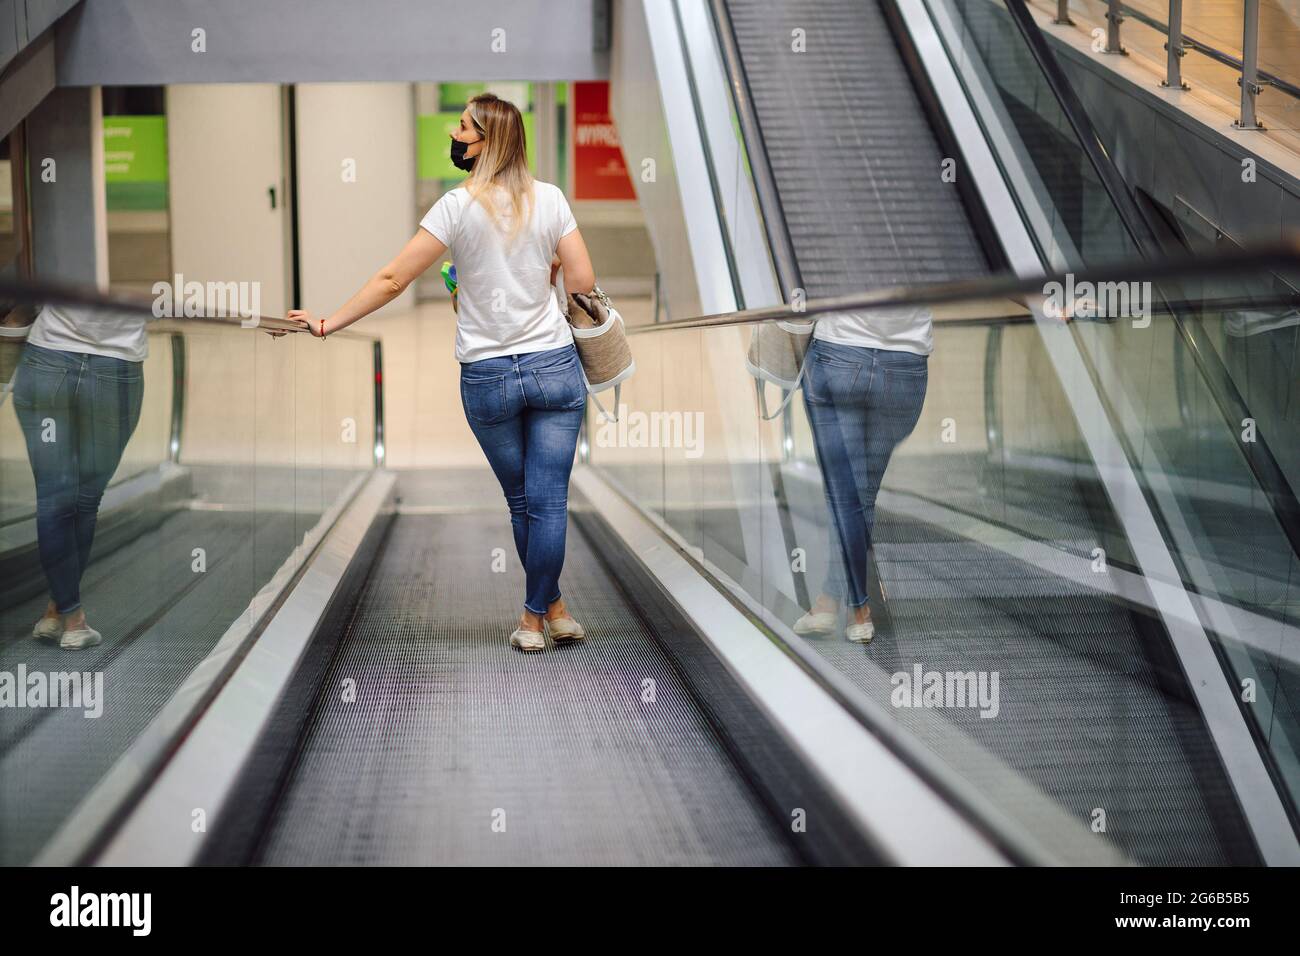 Moderne junge Frau in weißem T-Shirt und Jeans auf Rolltreppe im Einkaufszentrum schaut sich um. Einkaufen und Vergnügen. Lifestyle. Alltag in der Stadt. G Stockfoto